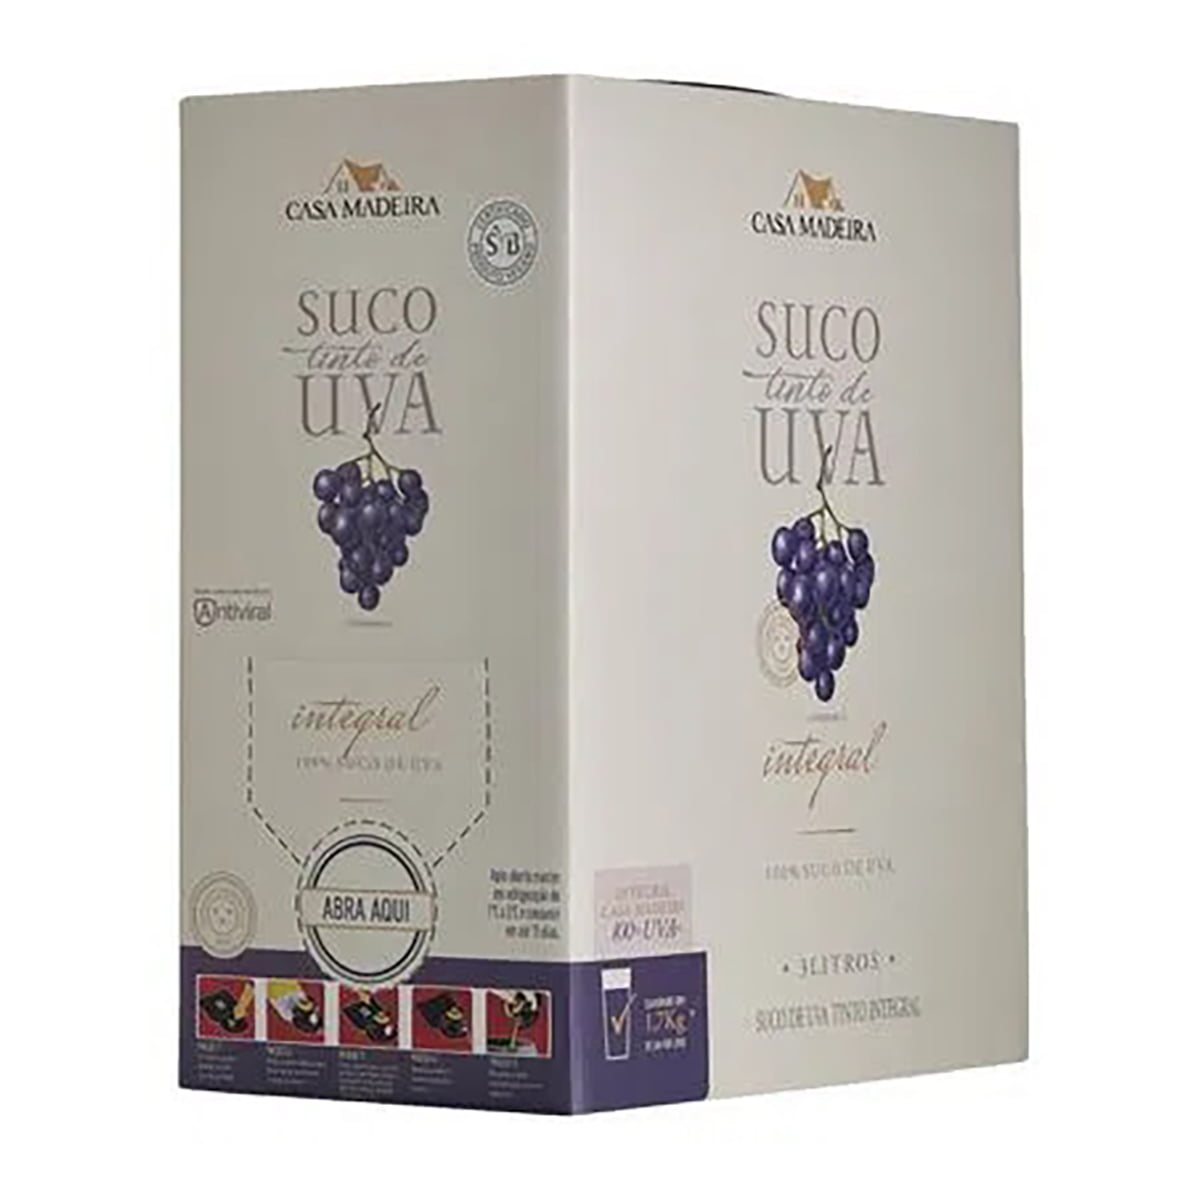 Suco de Uva Casa Madeira Tinto Integral Bag in Box 3Lts